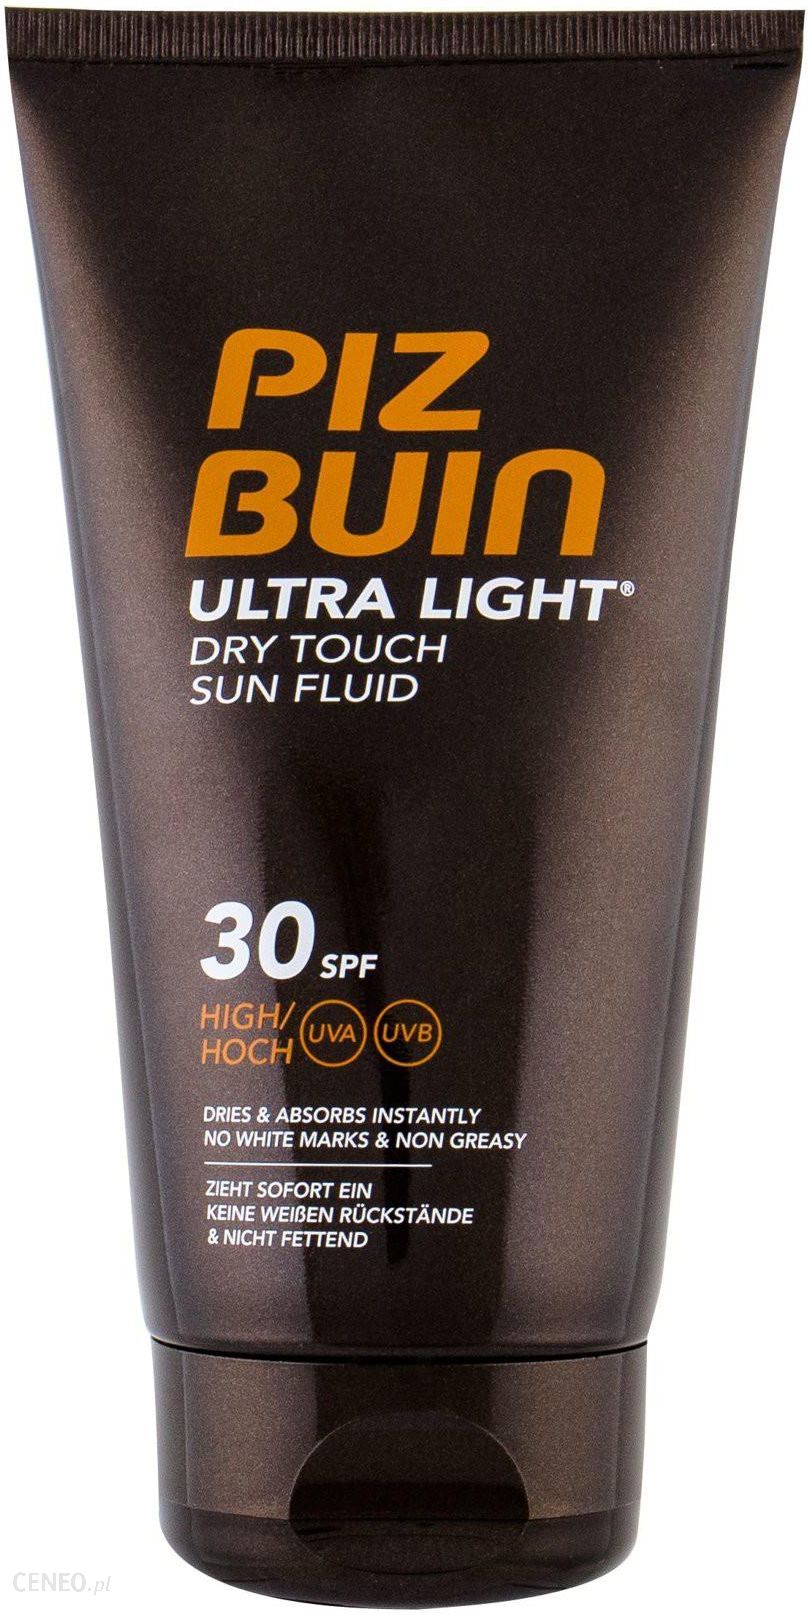 Fradrage kassette Sudan PIZ BUIN Ultra Light Dry Touch Sun Fluid SPF30 Preparat do opalania ciała  150ml - Opinie i ceny na Ceneo.pl